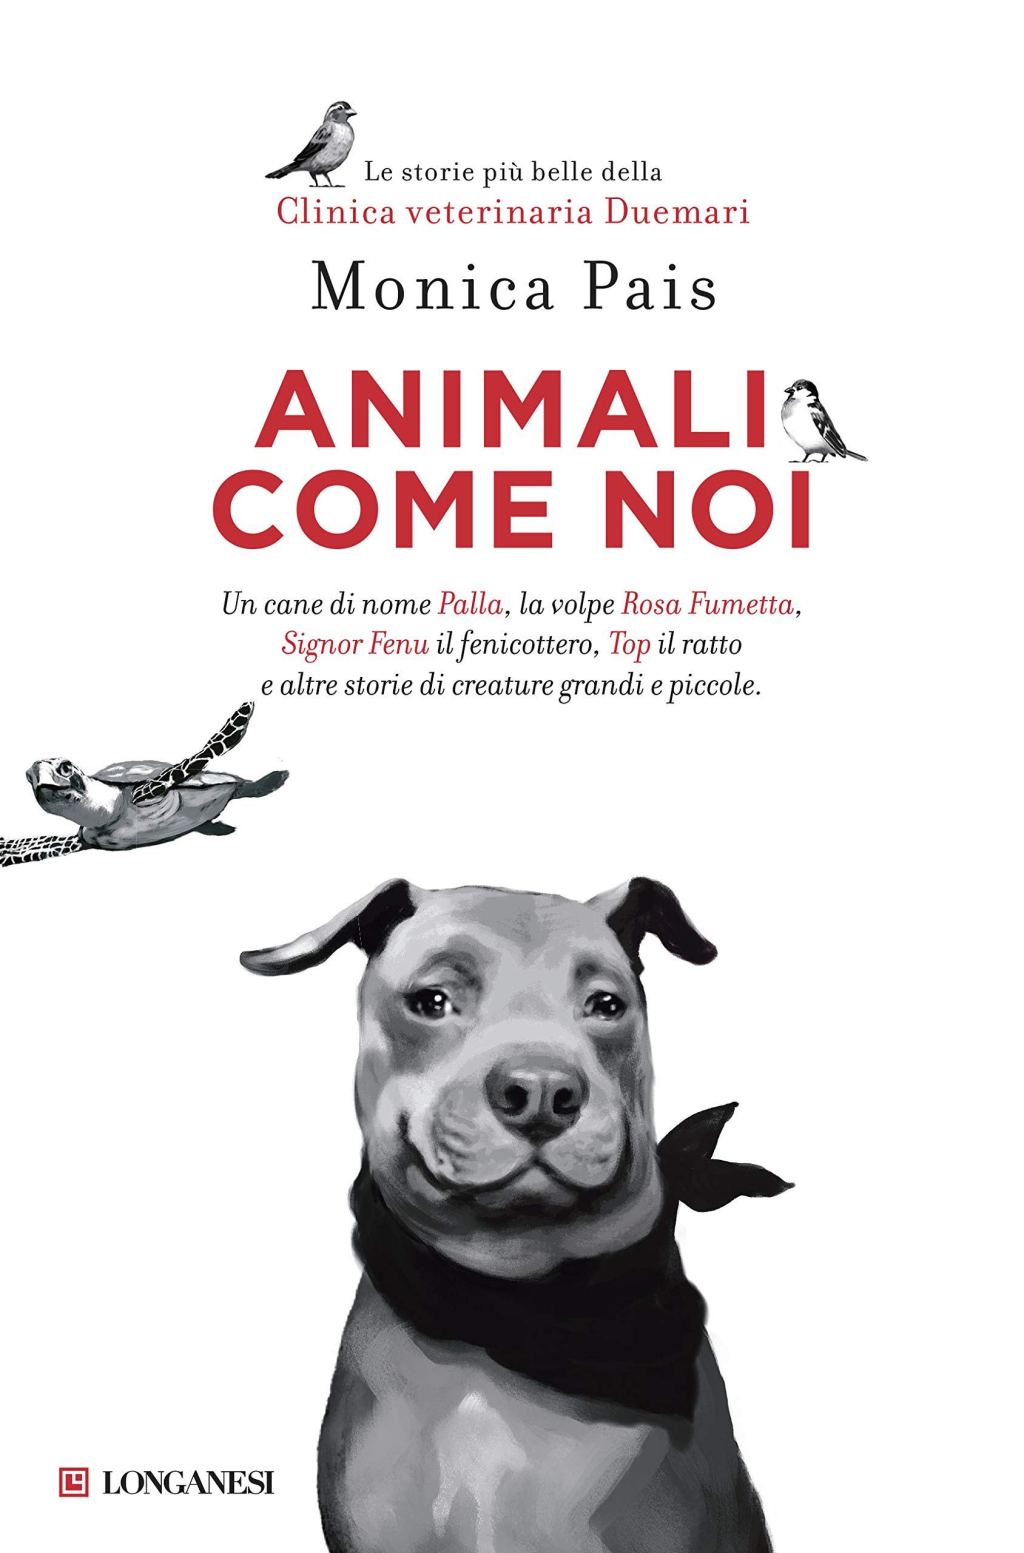 Presentazione del libro: ANIMALI COME NOI